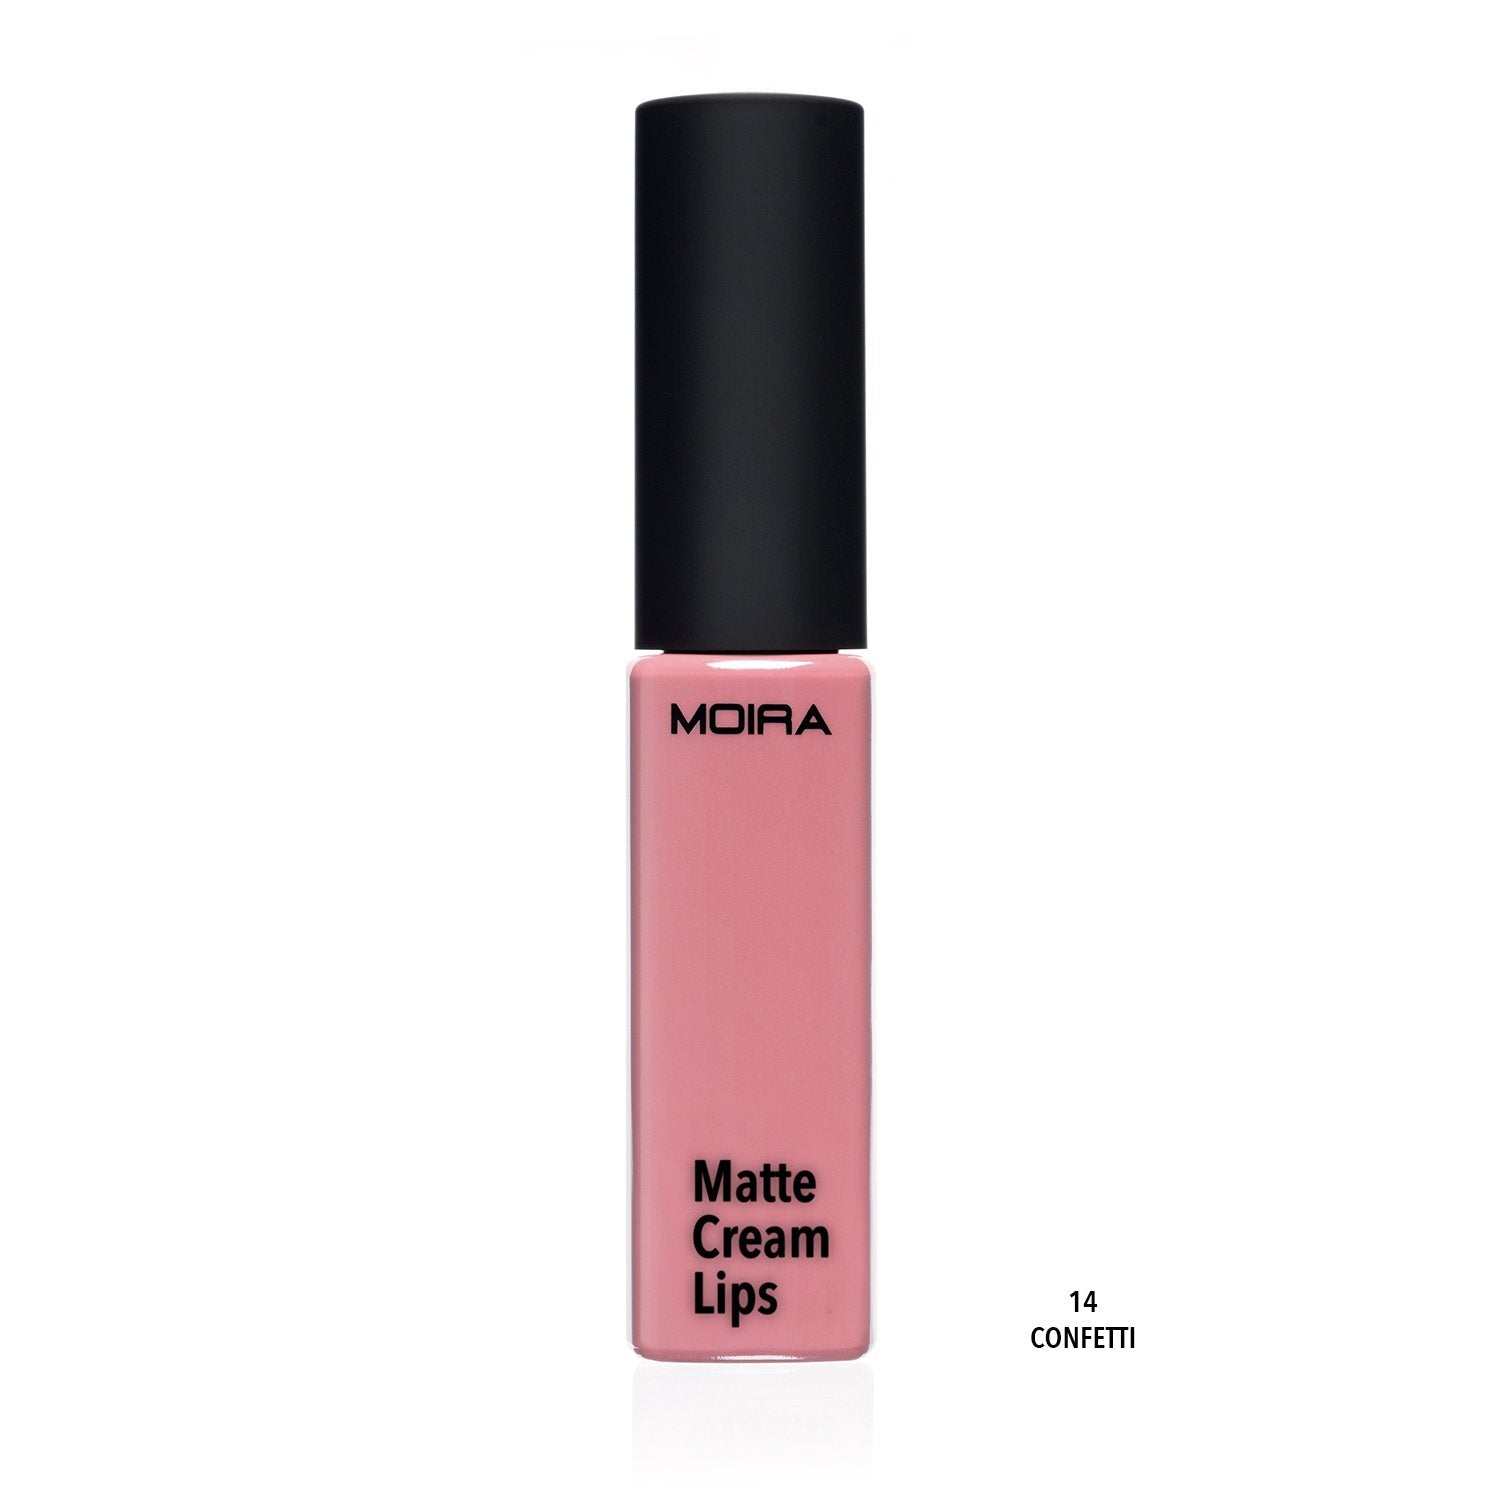 Matte Cream Lips (014, Confetti)